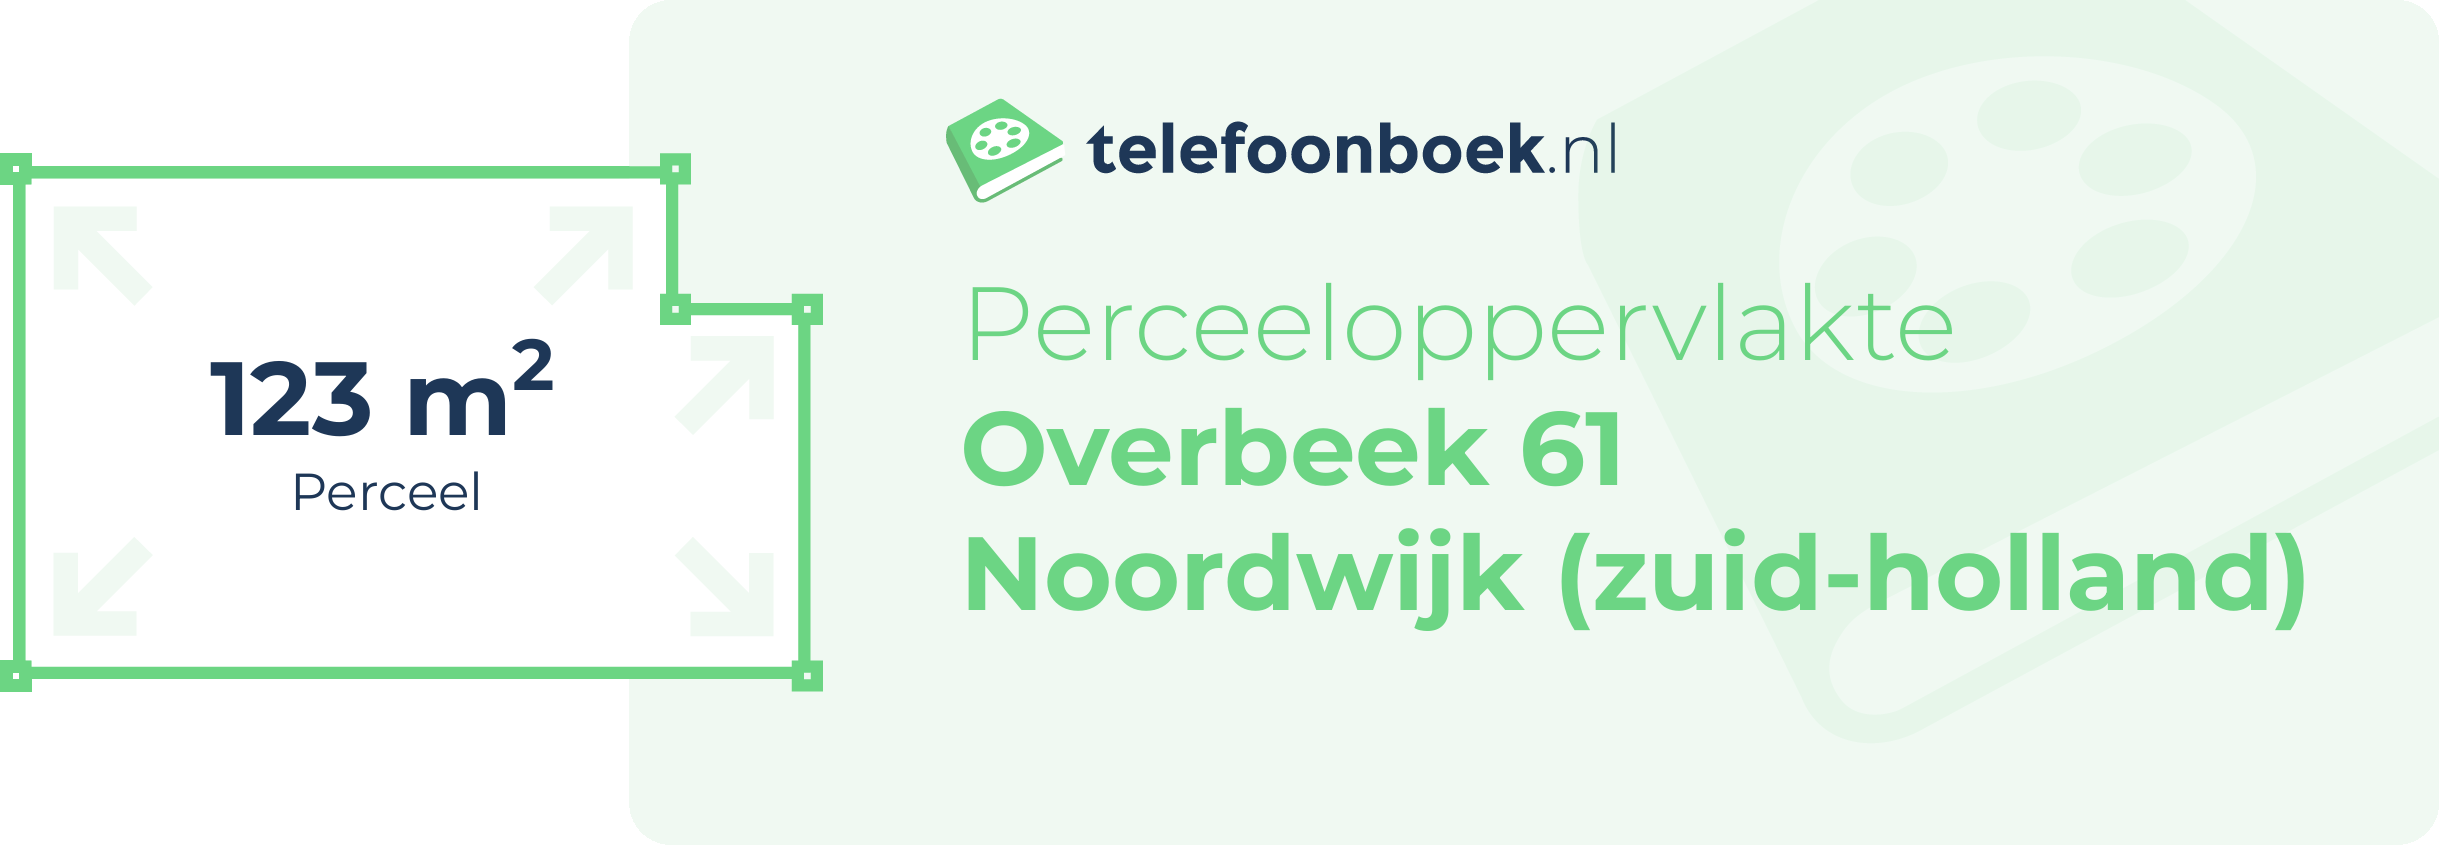 Perceeloppervlakte Overbeek 61 Noordwijk (Zuid-Holland)